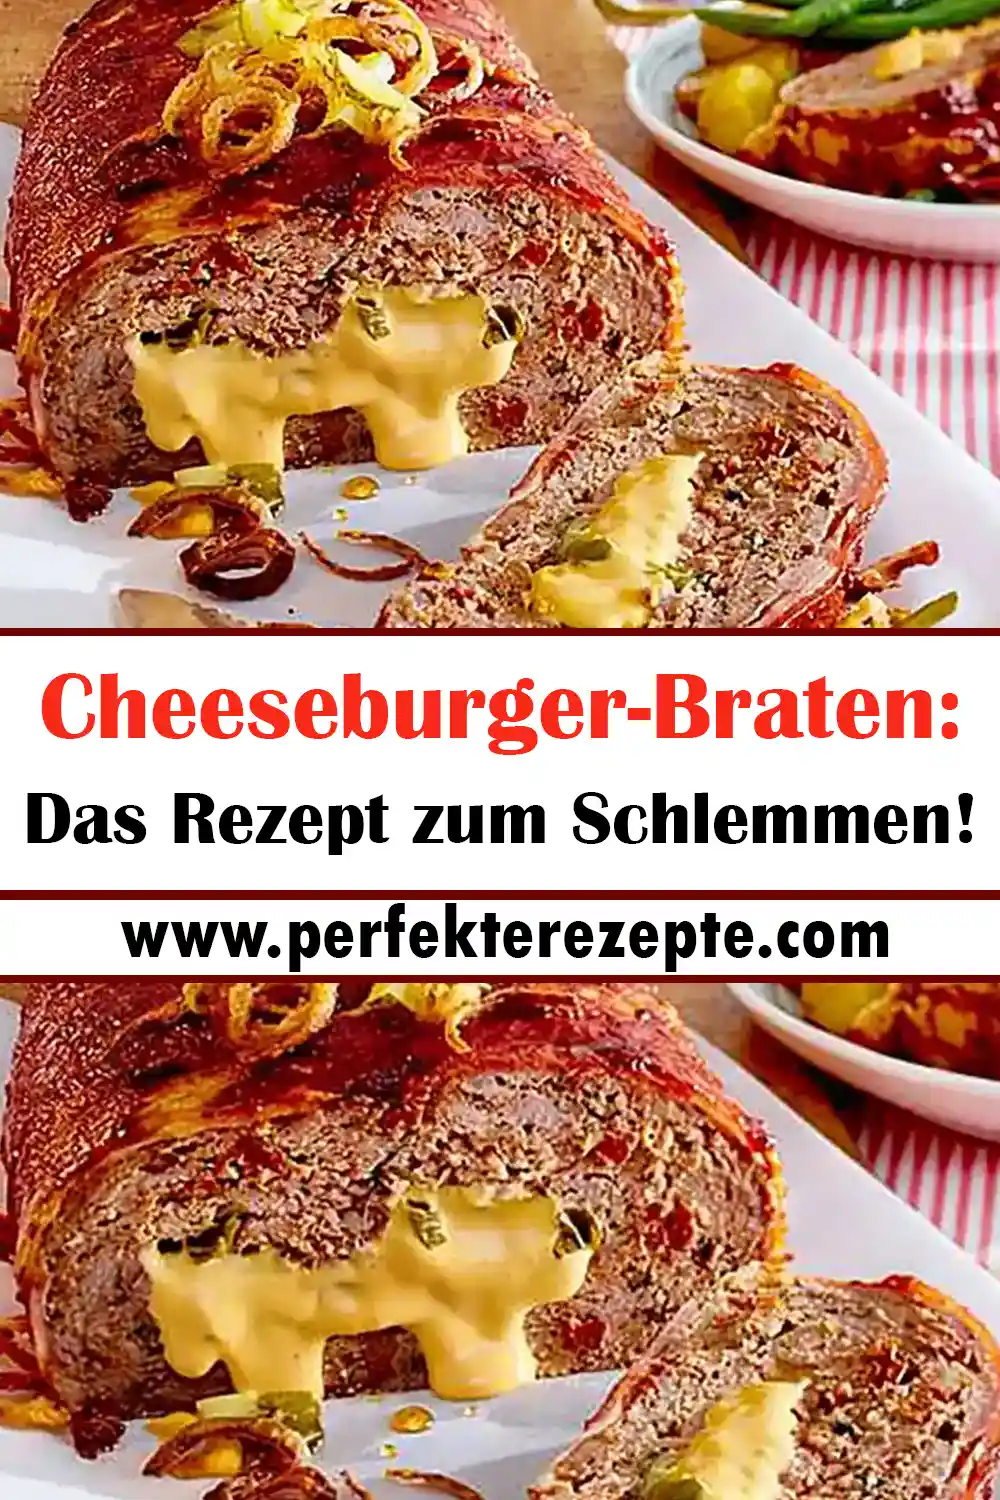 Cheeseburger-Braten: Das Rezept zum Schlemmen!